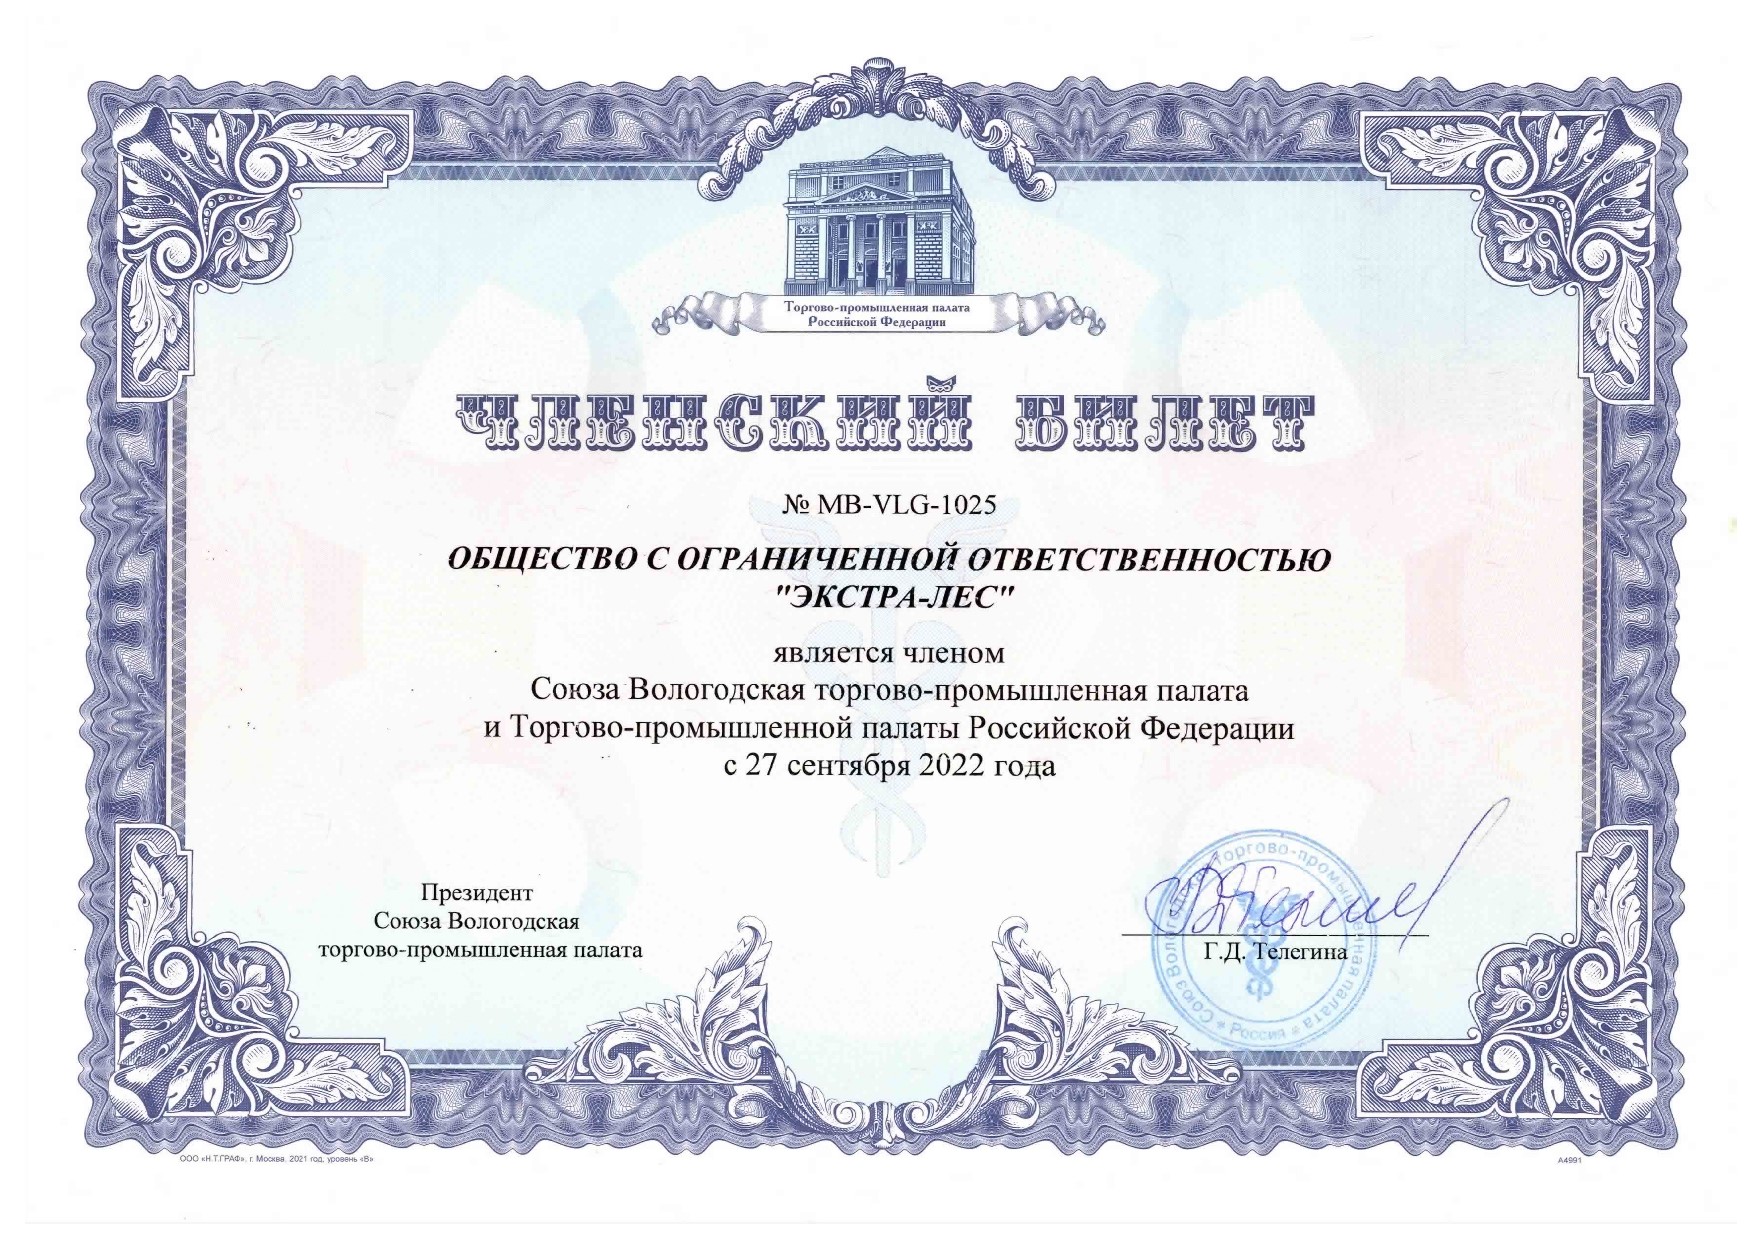                        Компания Экстра-Лес является членом Союза Вологодской торгово-промышленной палаты  и Торгово-промышленной палаты РФ